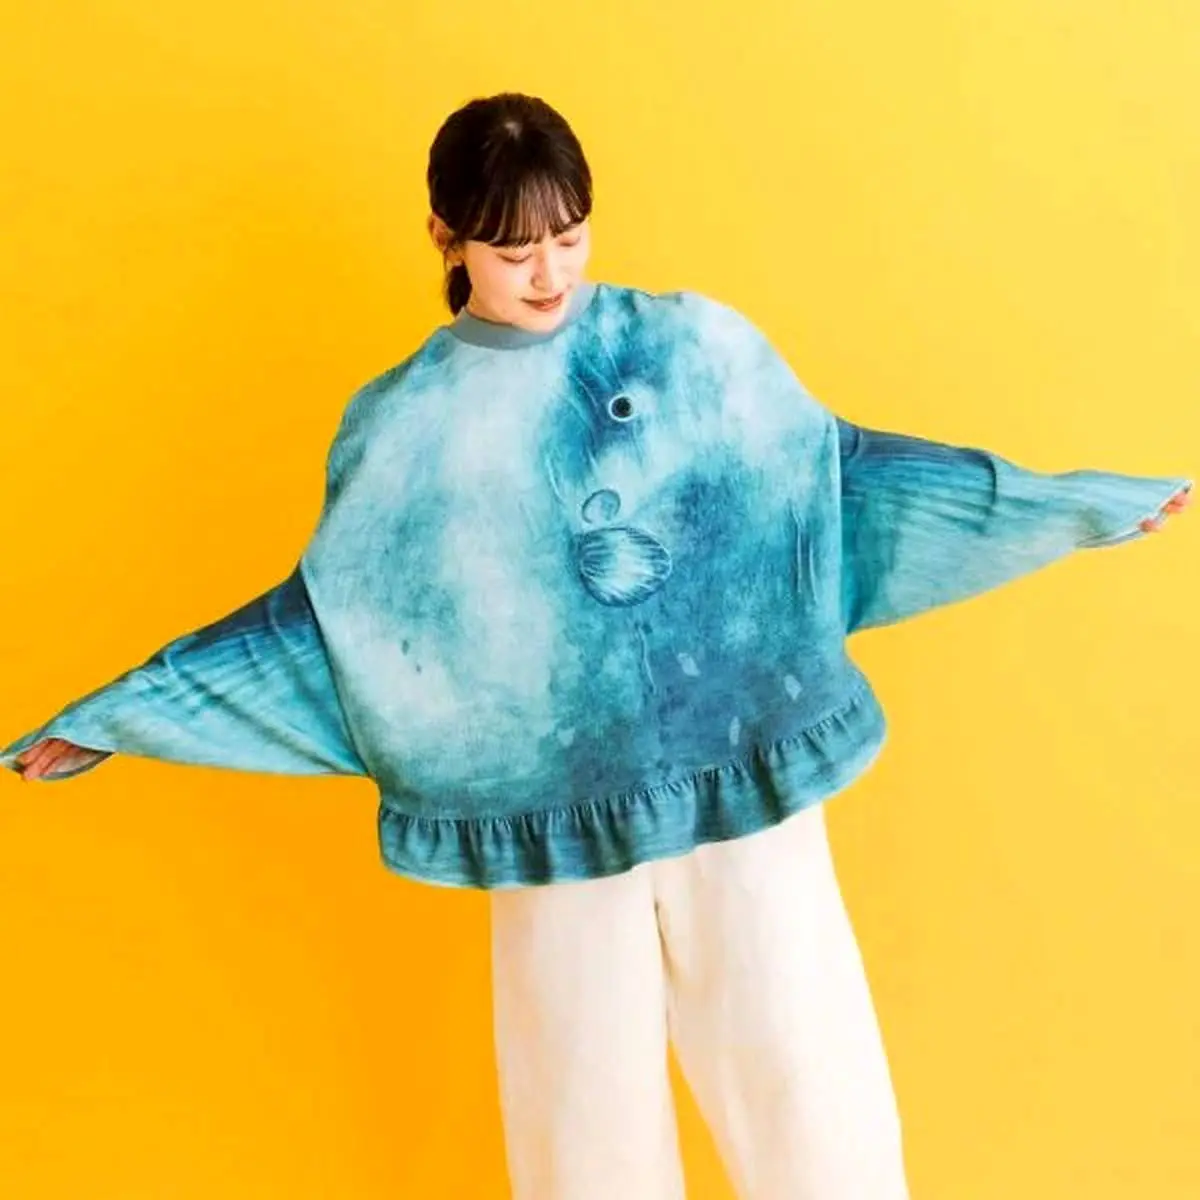 با این لباس به ماهی خورشیدی تبدیل می شوید!